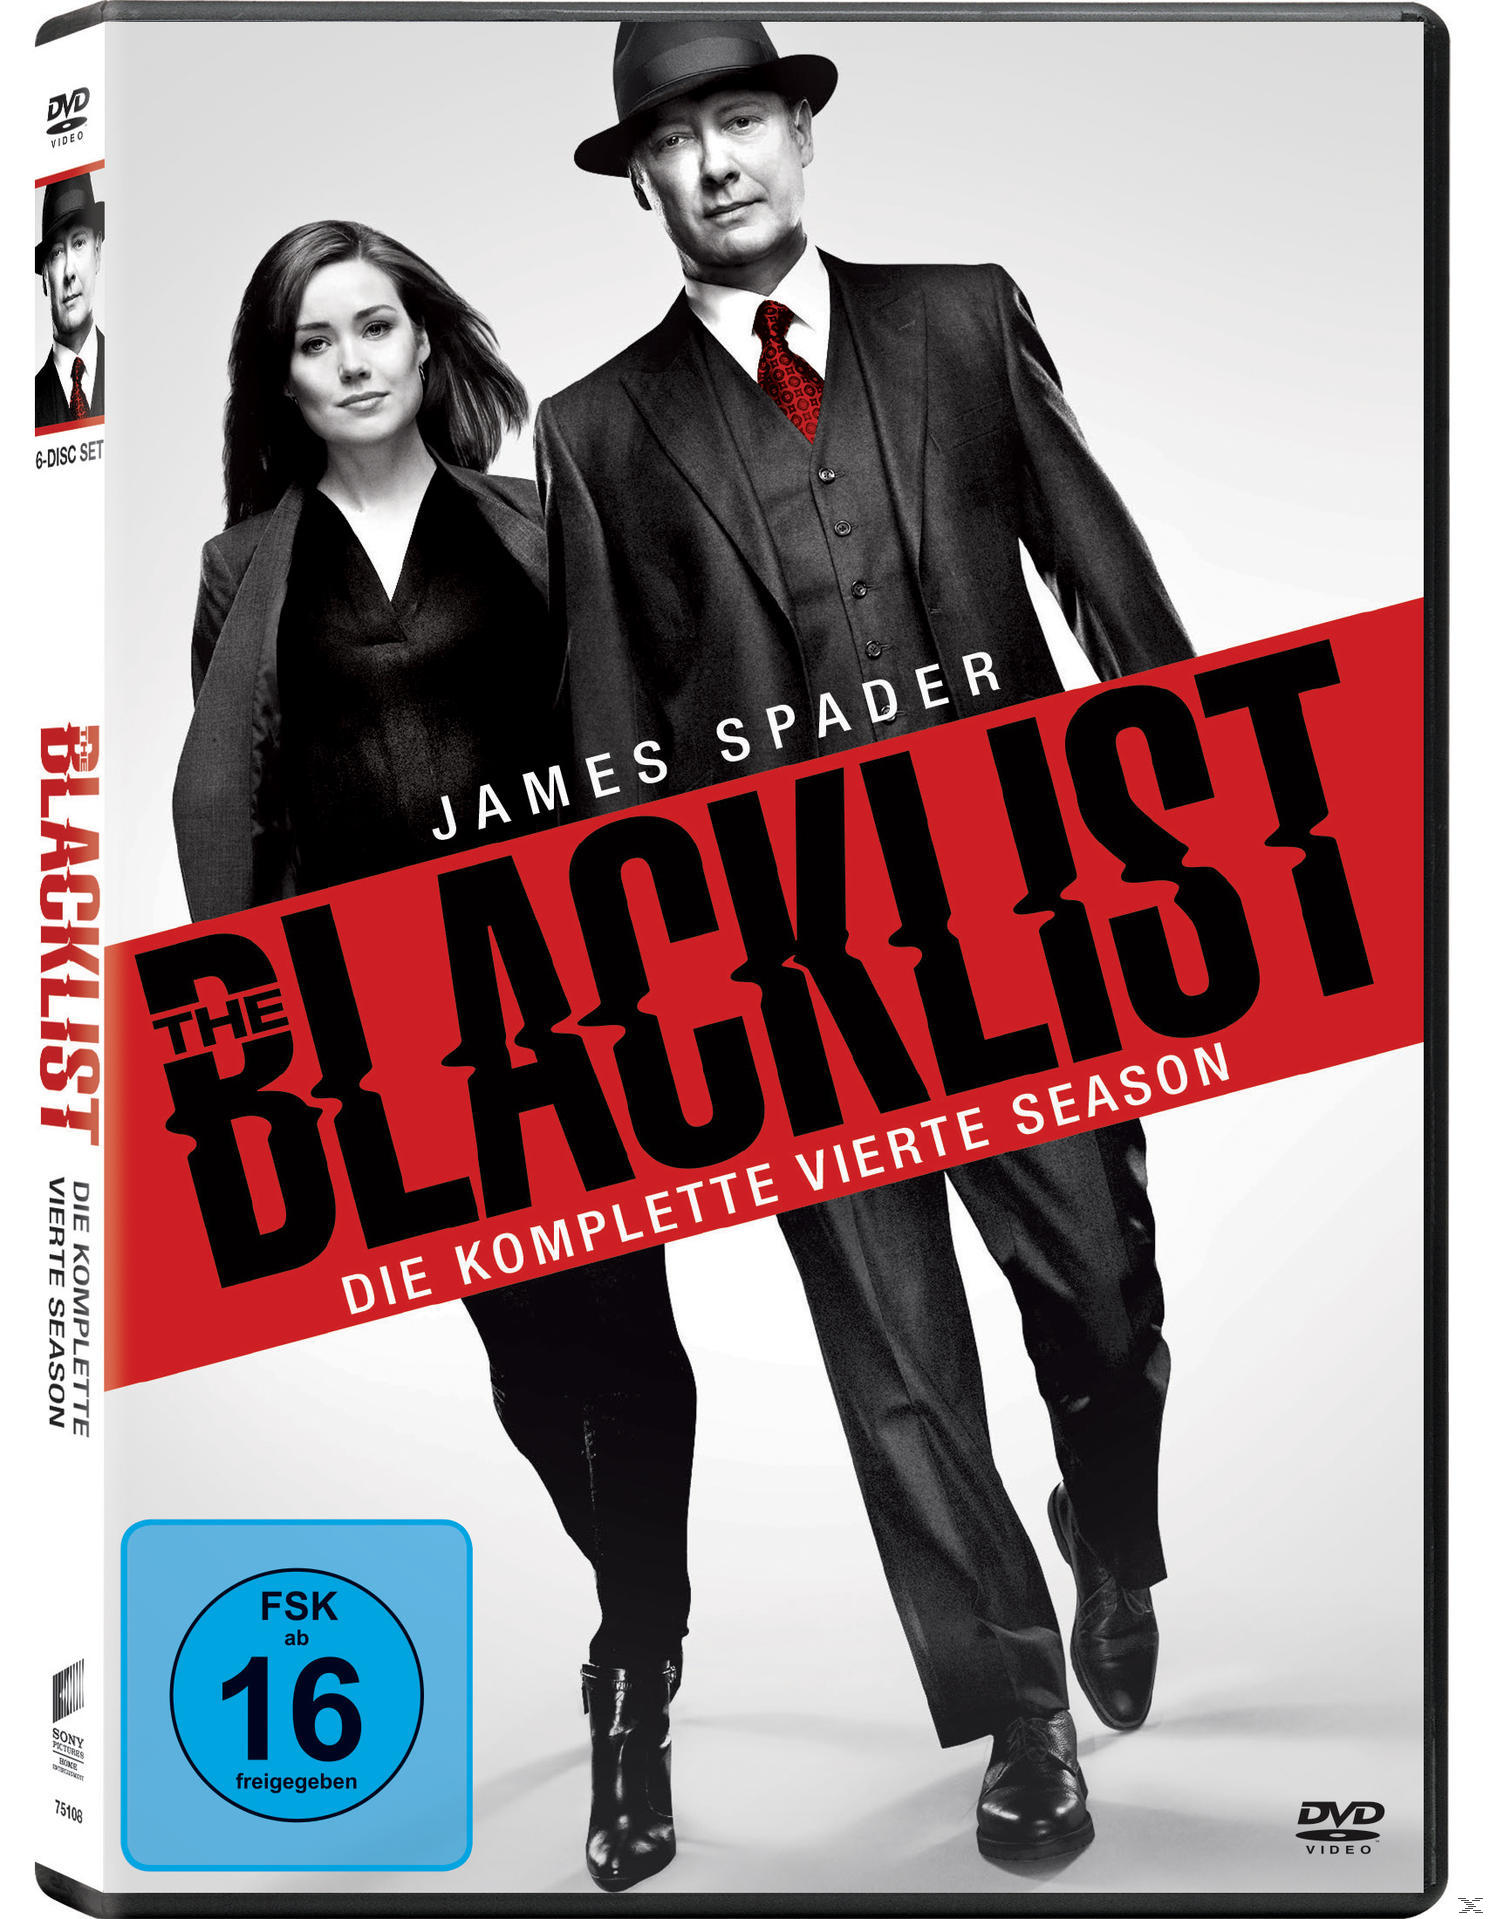 The Blacklist - DVD Season vierte komplette Die